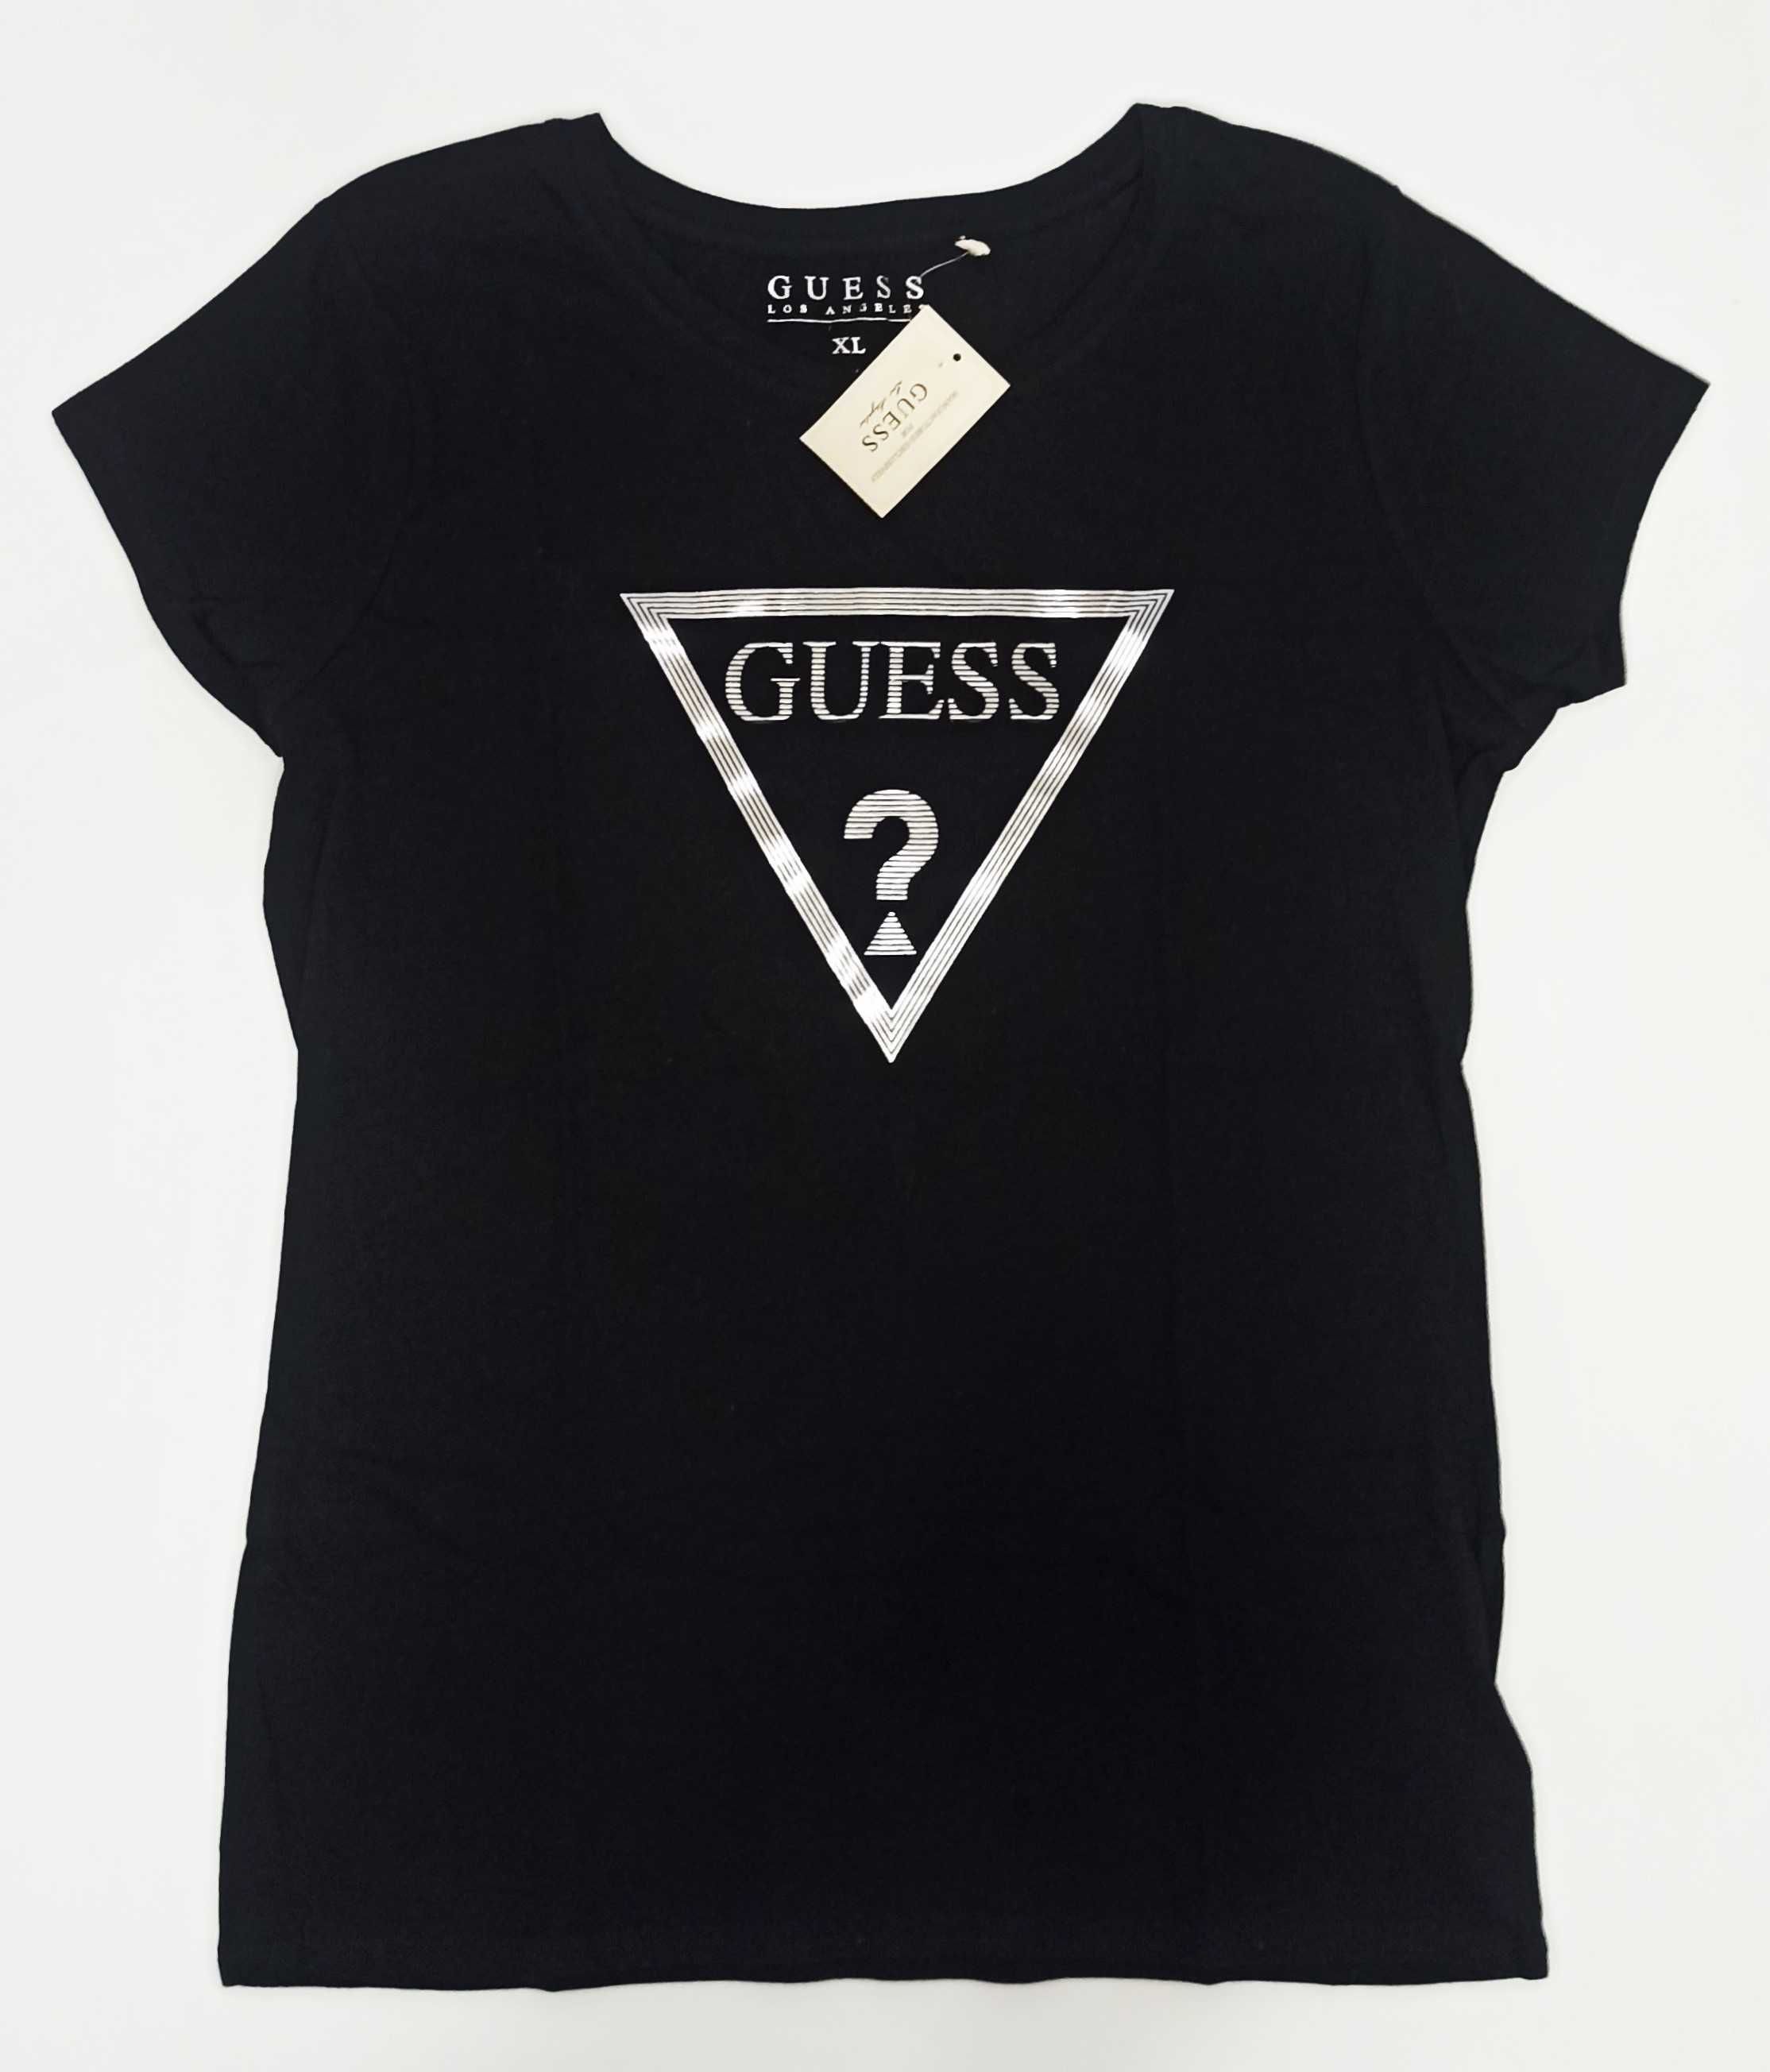 GUESS Oryginalny Damski T-Shirt Koszulka Bluzka Czarna Srebrny Trojkat